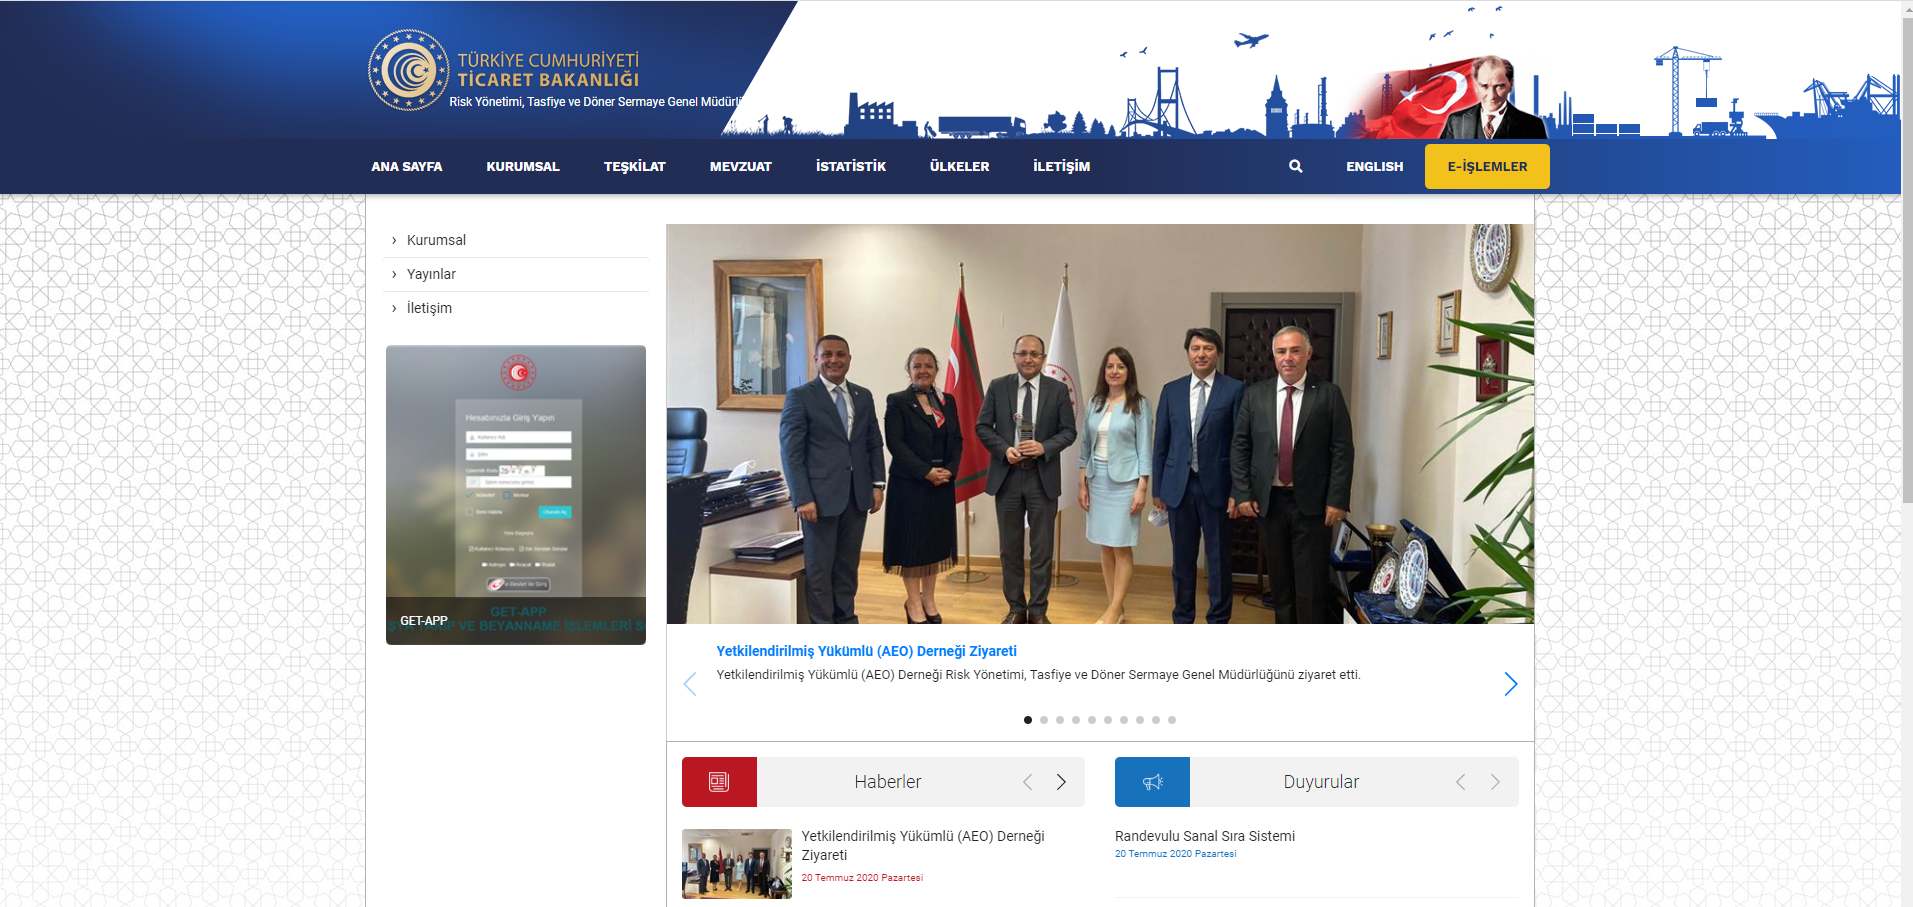 Ticaret Bakanlığı Risk Yönetimi, Tasfiye ve Döner Sermaye Genel Müdürlüğü web sayfasında yerimizi aldık.